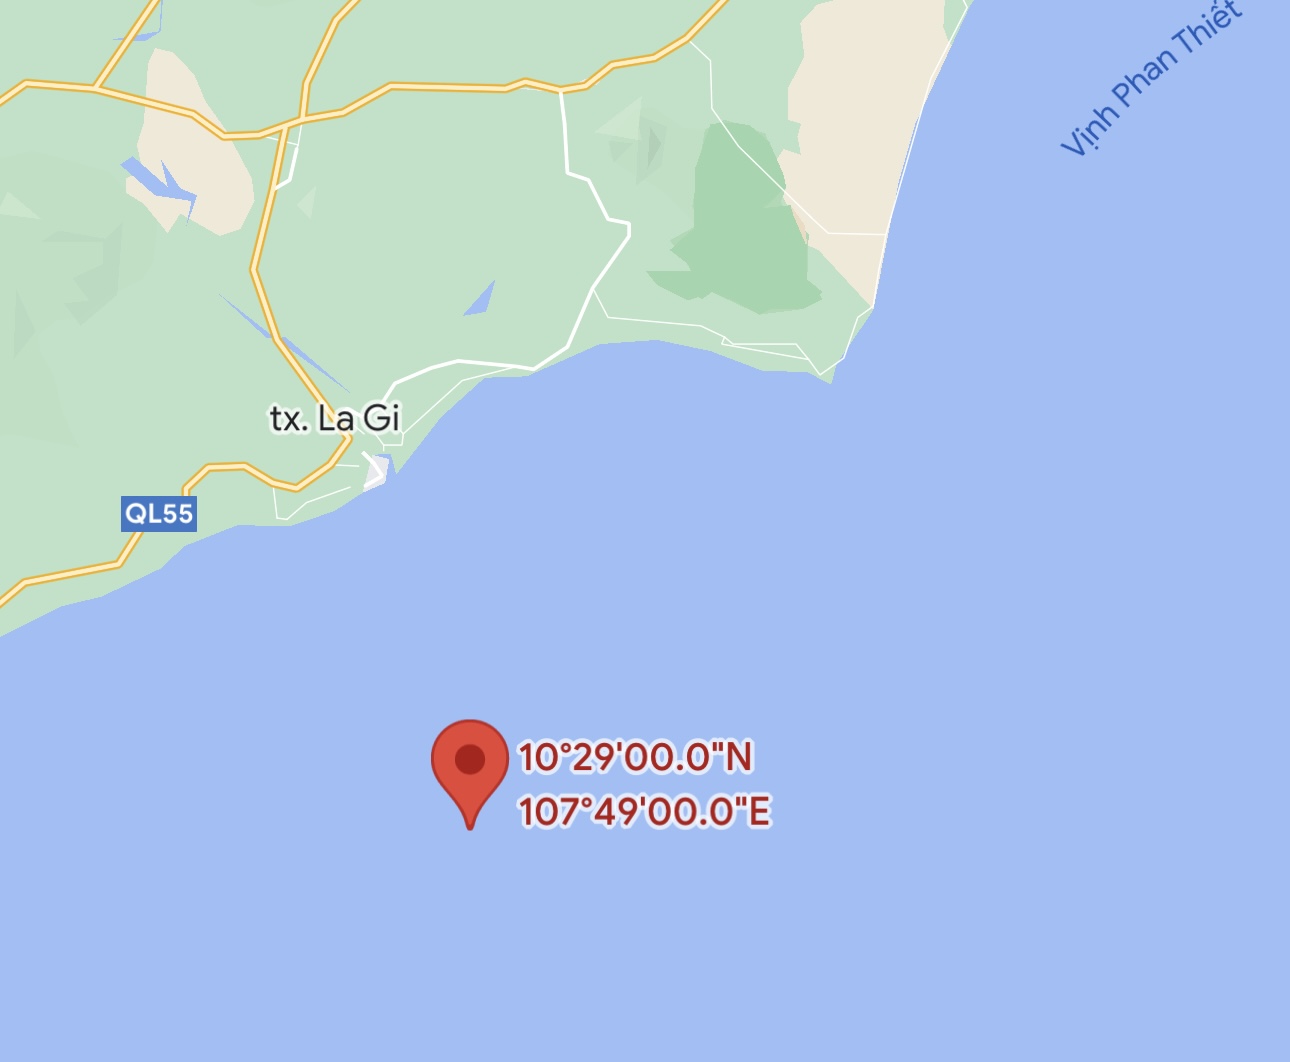 Vị trí tàu chìm cách cửa biển La Gi khoảng 11 hải lý về hướng Nam. Ảnh: Google Maps